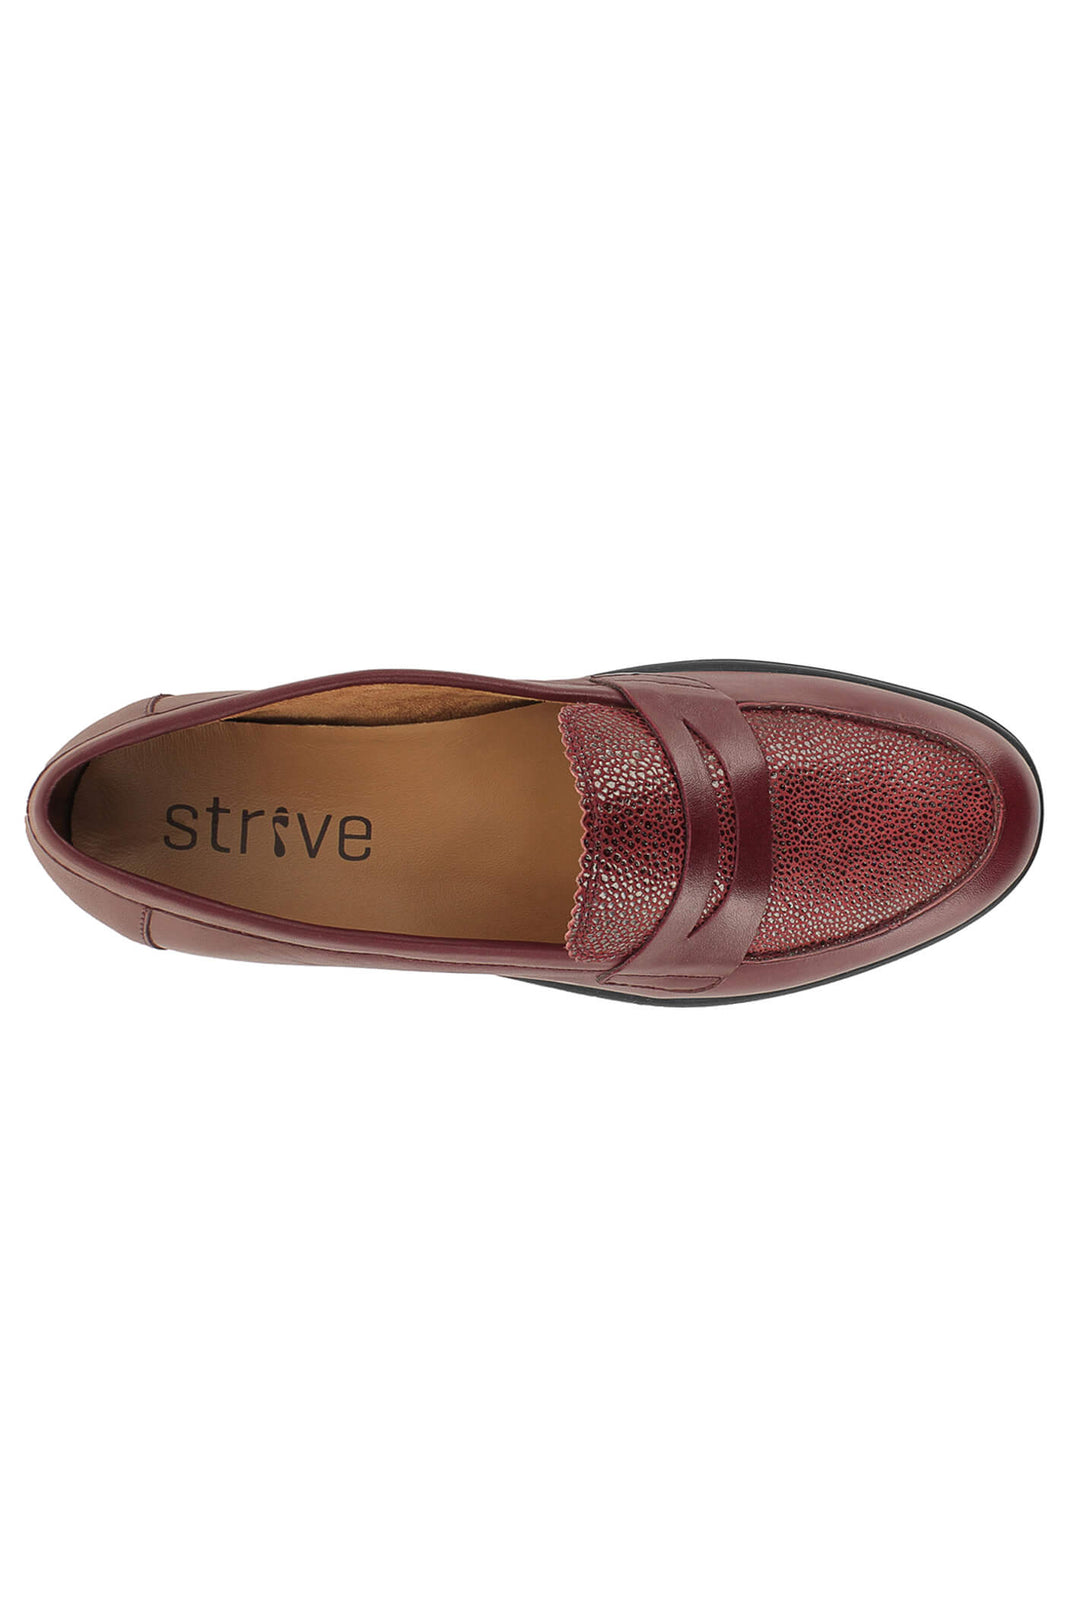 Strive Seville Cherry Shoes - Shirley Allum Boutique